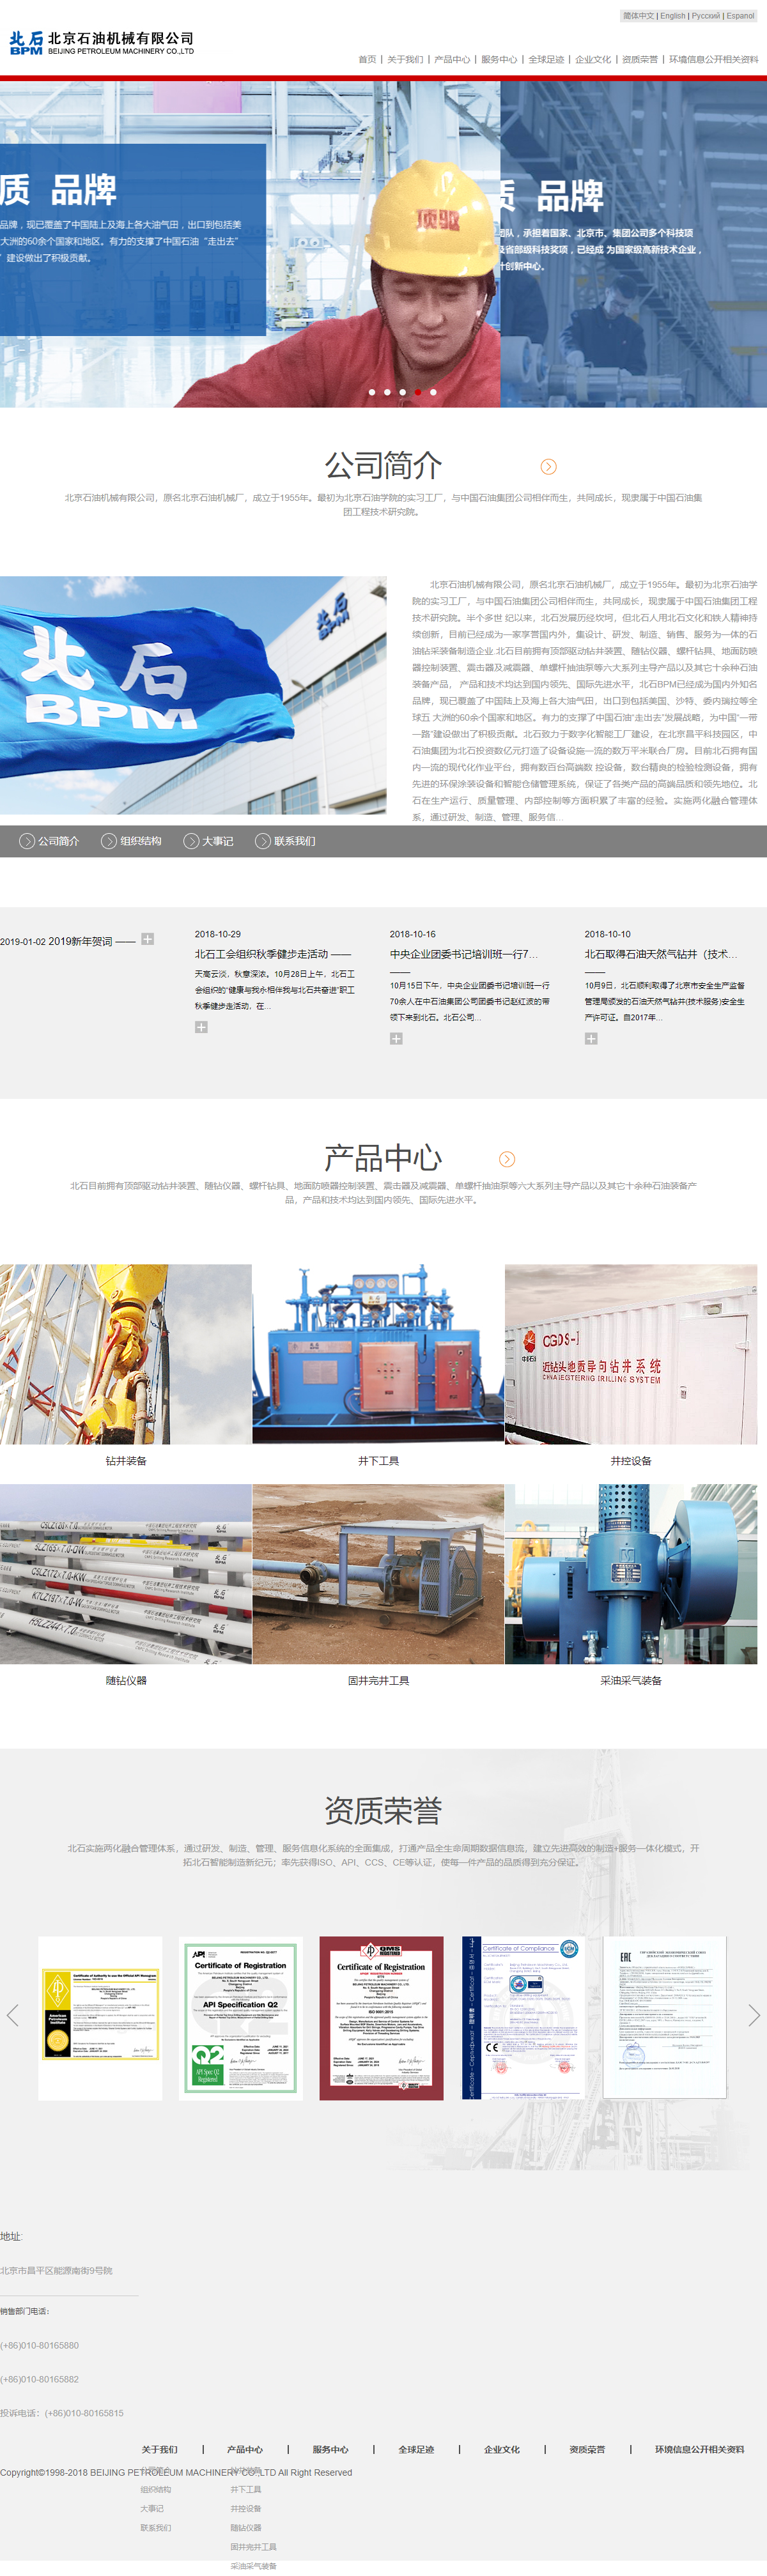 北京石油机械有限公司网站案例